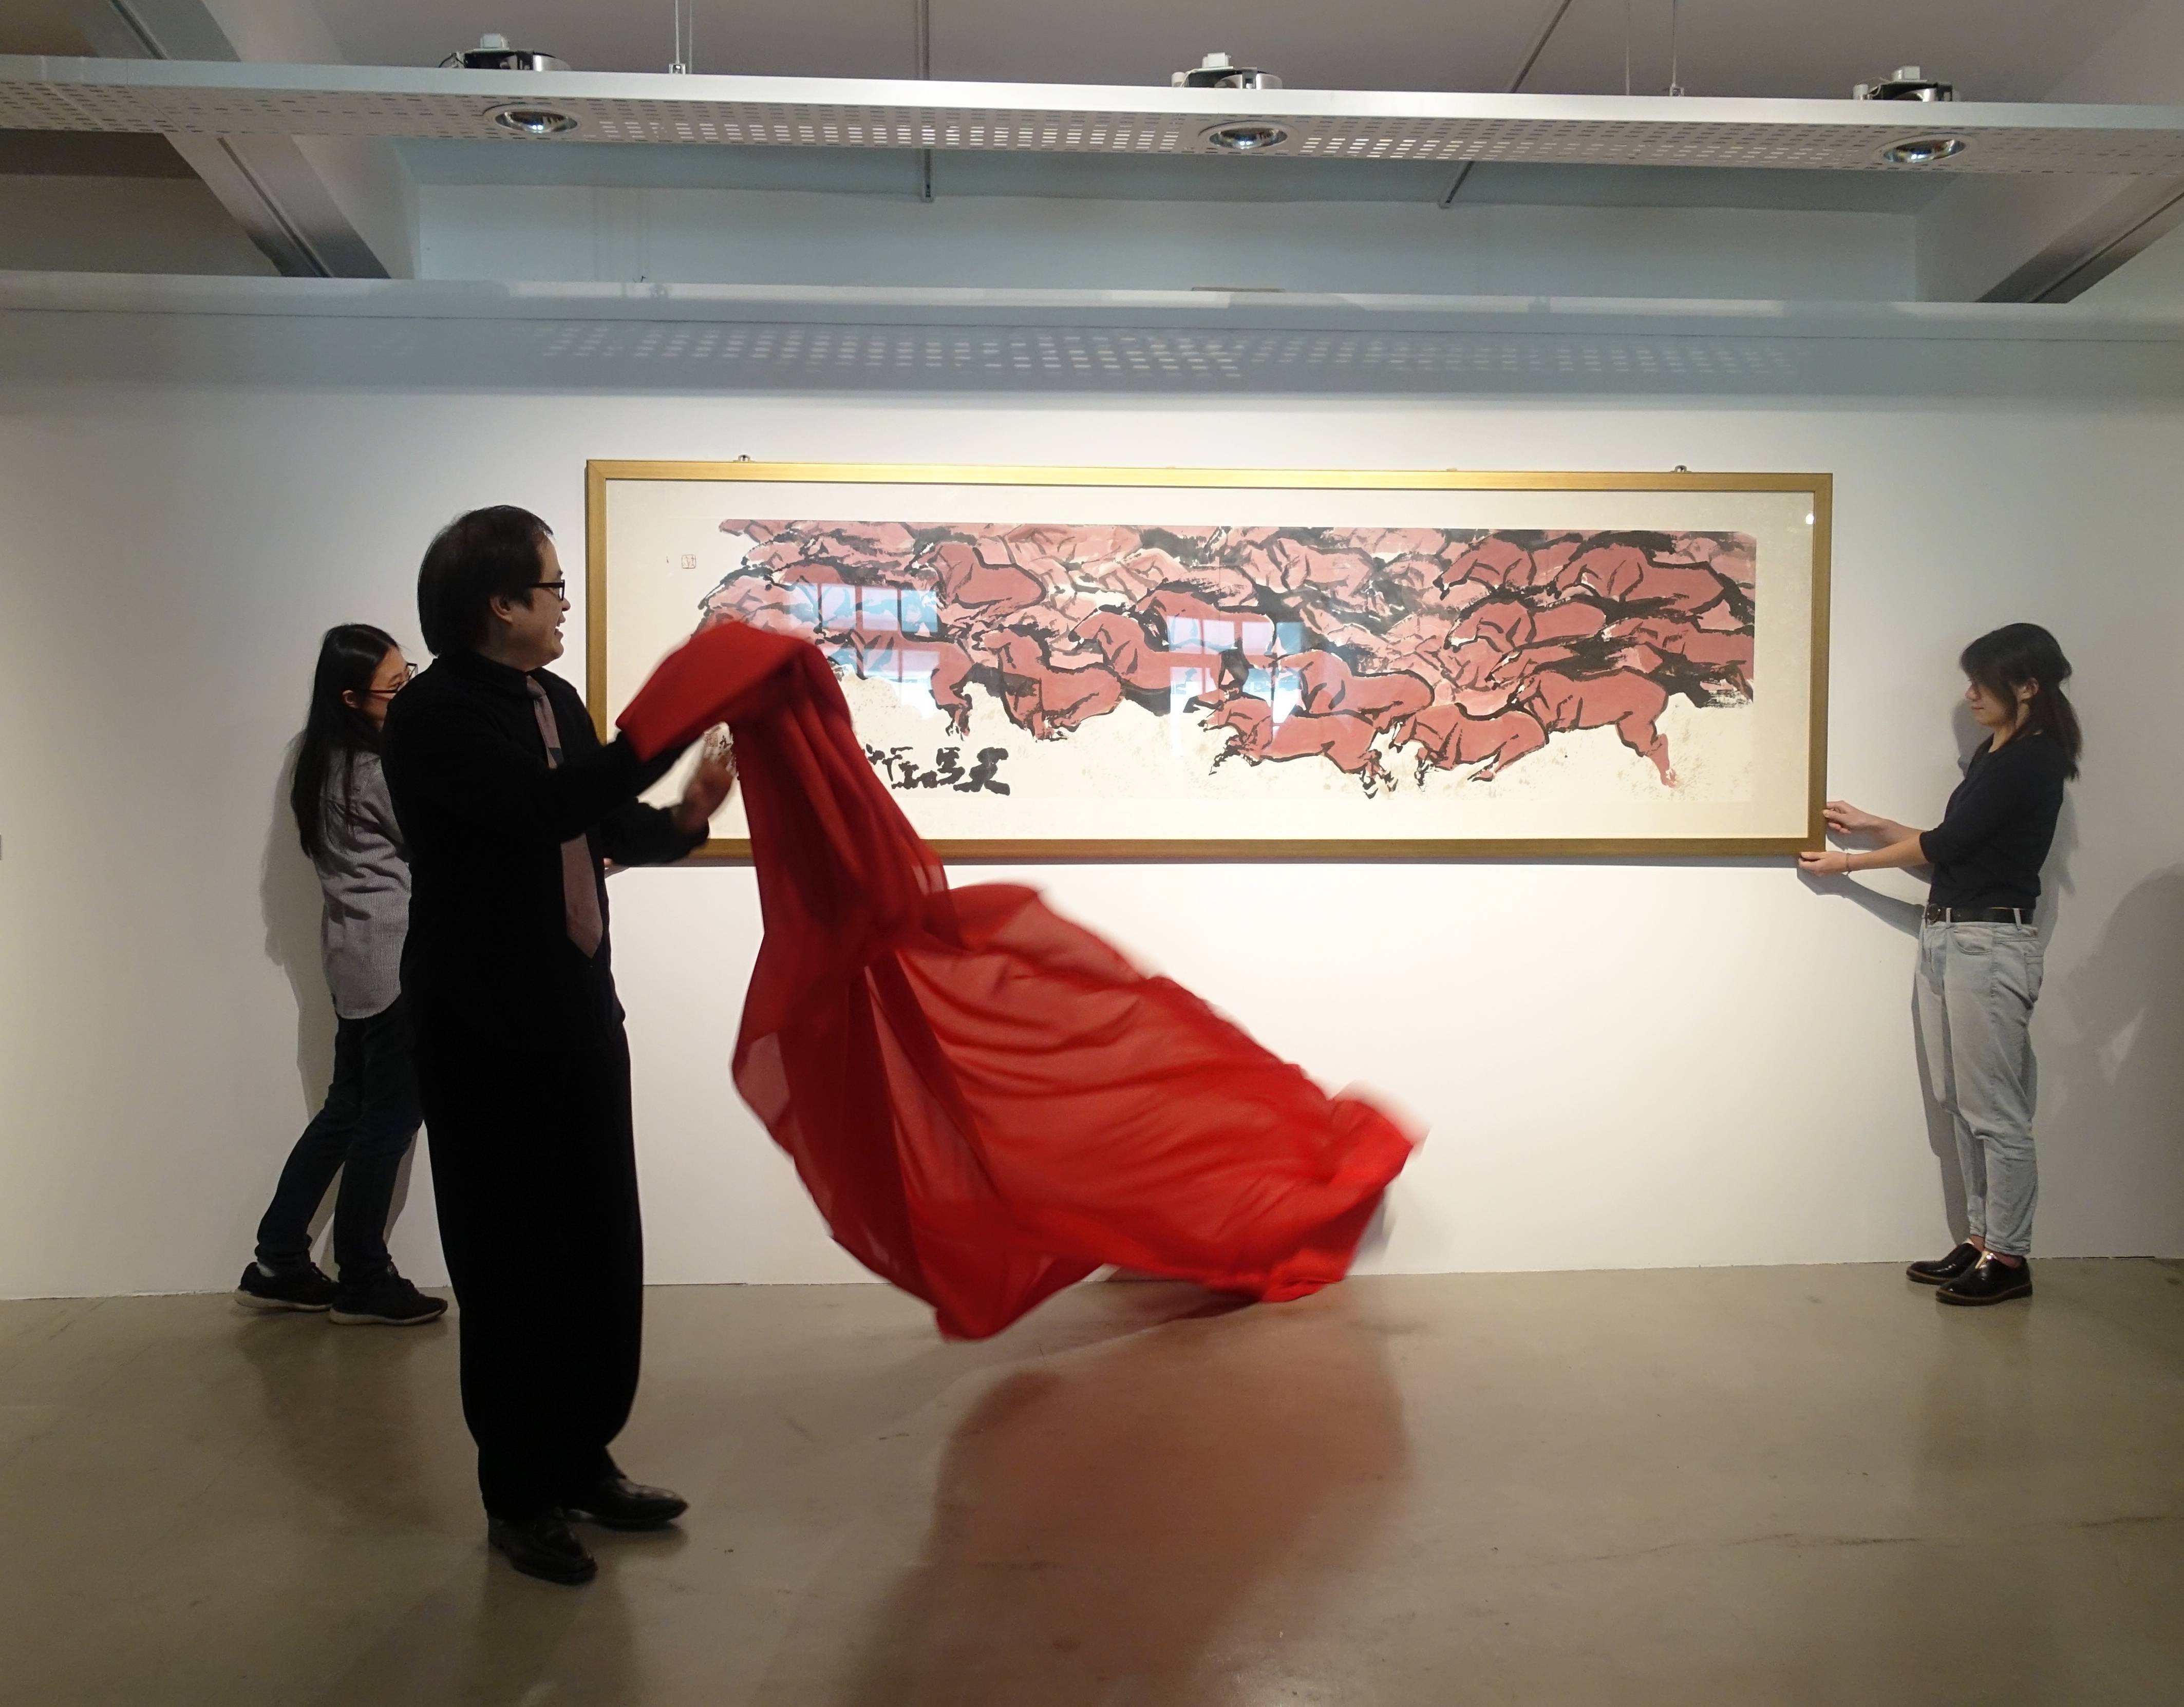 台藝大校長陳志誠先生為揭幕式揭開畫作序幕。